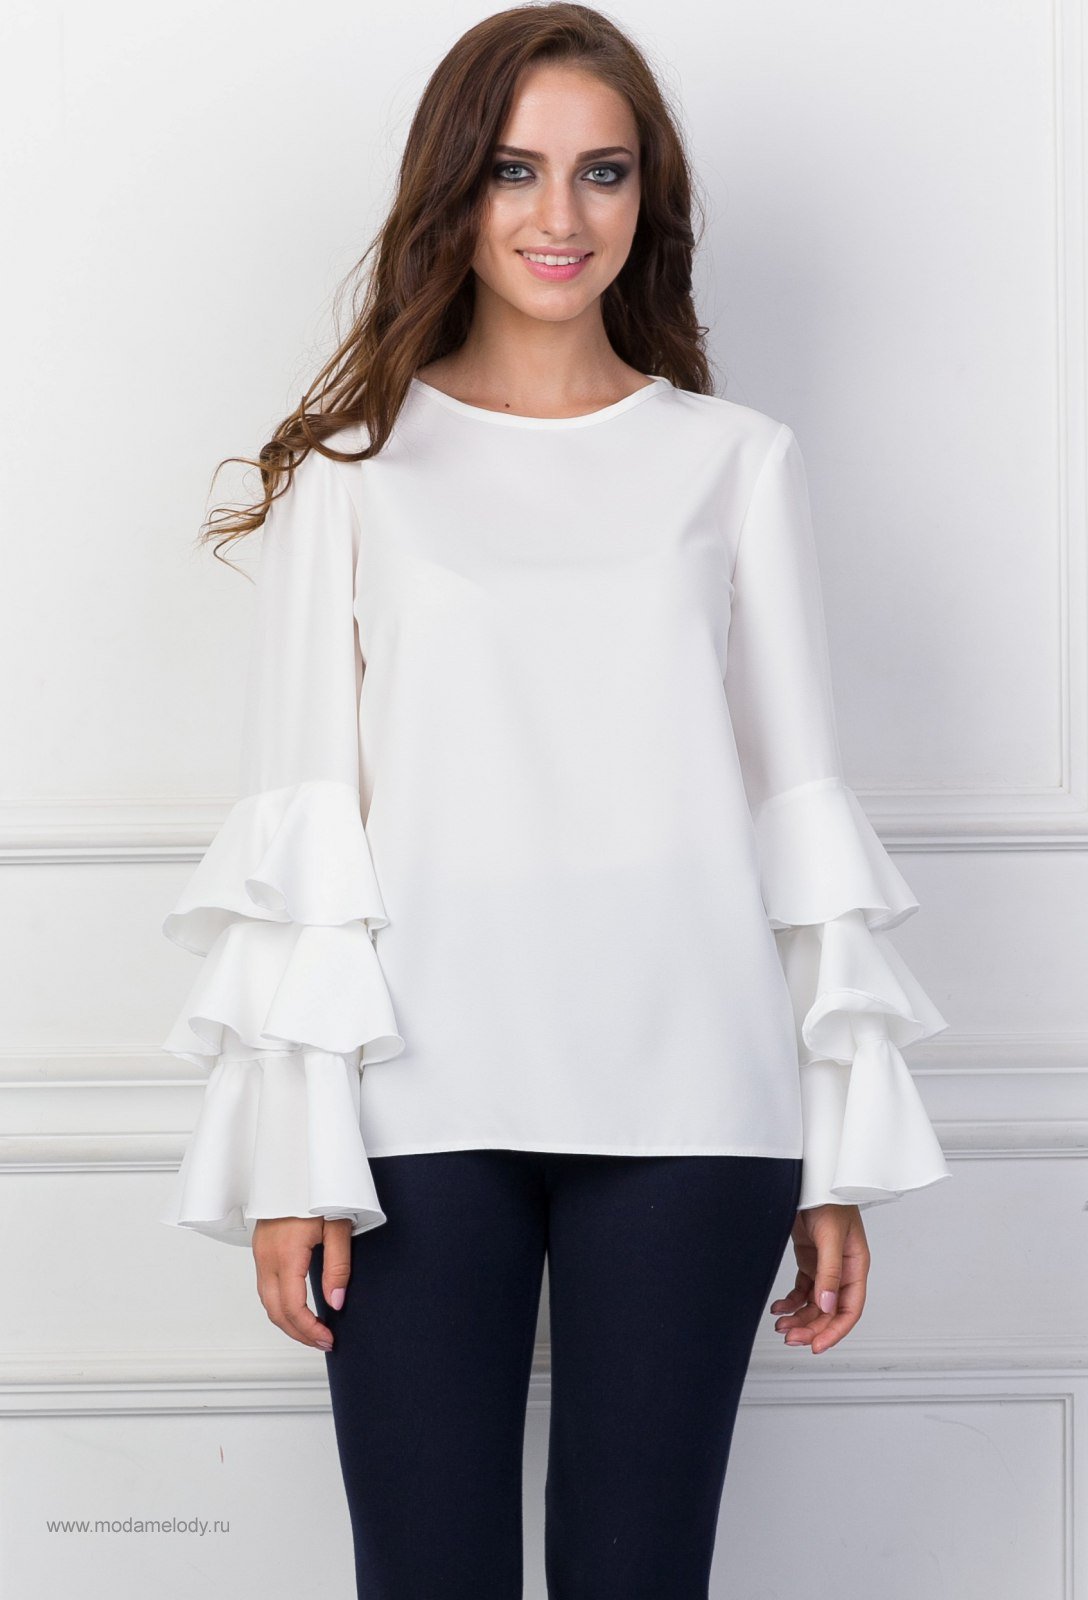 Белая блузка с расклешенными рукавами